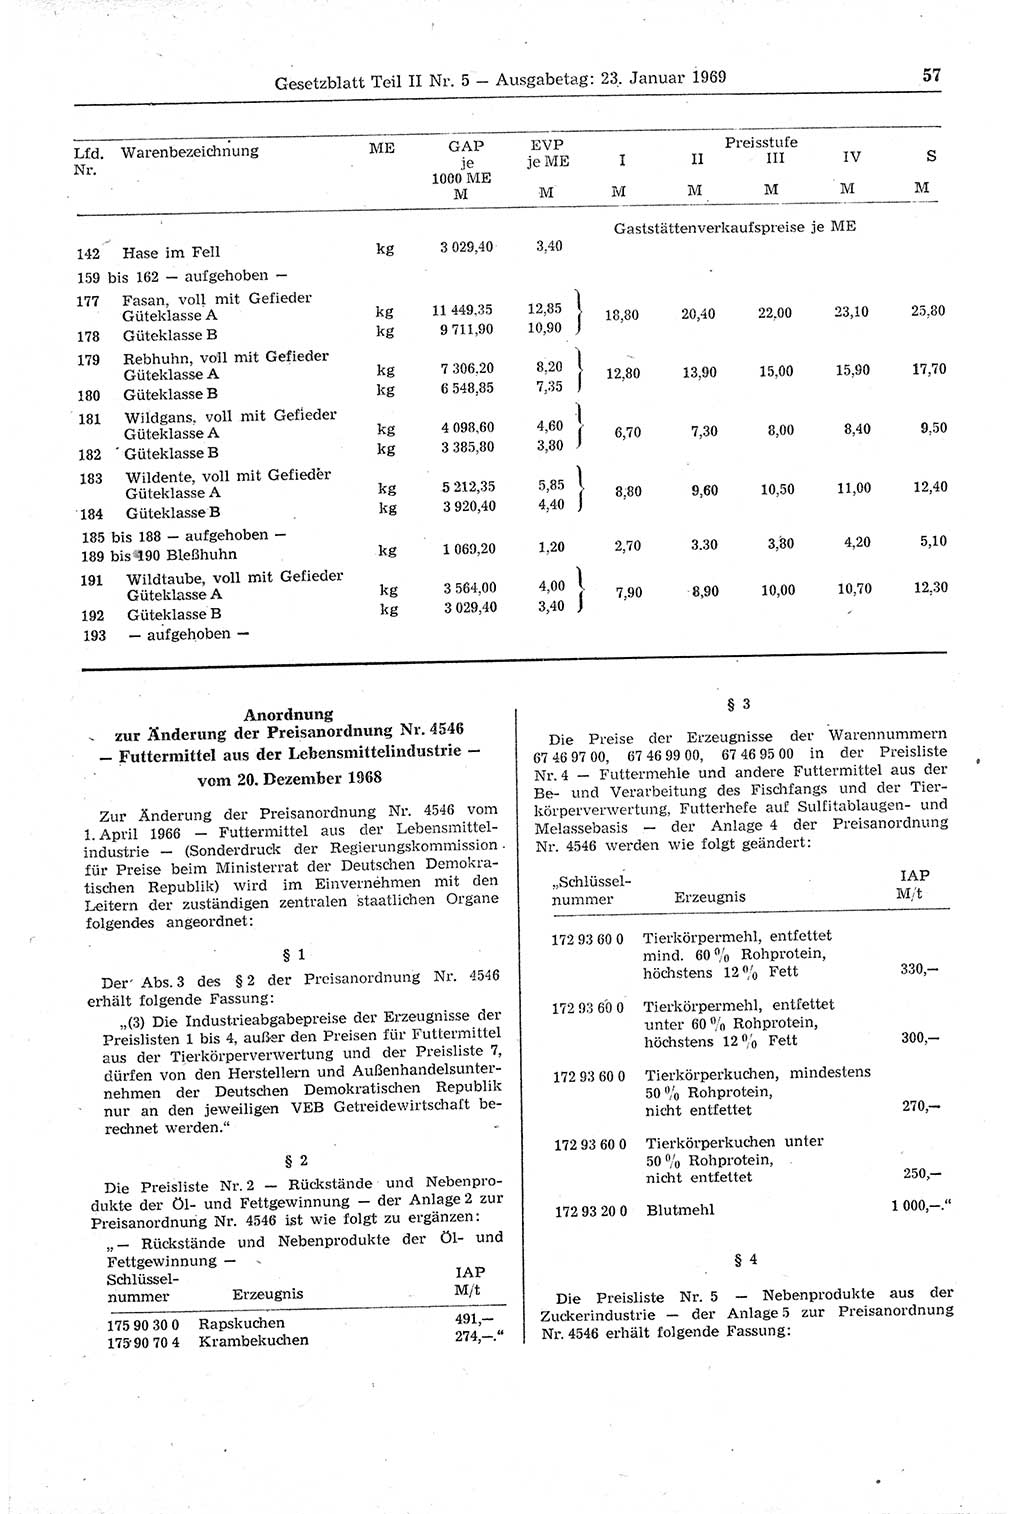 Gesetzblatt (GBl.) der Deutschen Demokratischen Republik (DDR) Teil ⅠⅠ 1969, Seite 57 (GBl. DDR ⅠⅠ 1969, S. 57)